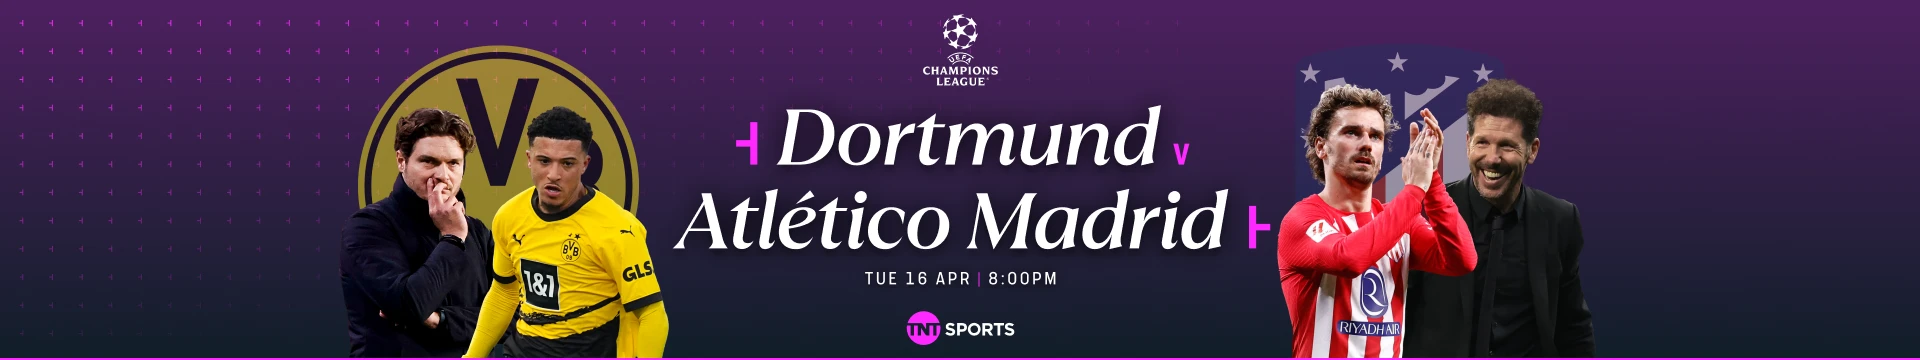 Dortmund v Atlético de Madrid Tuesday 16 April at 8pm